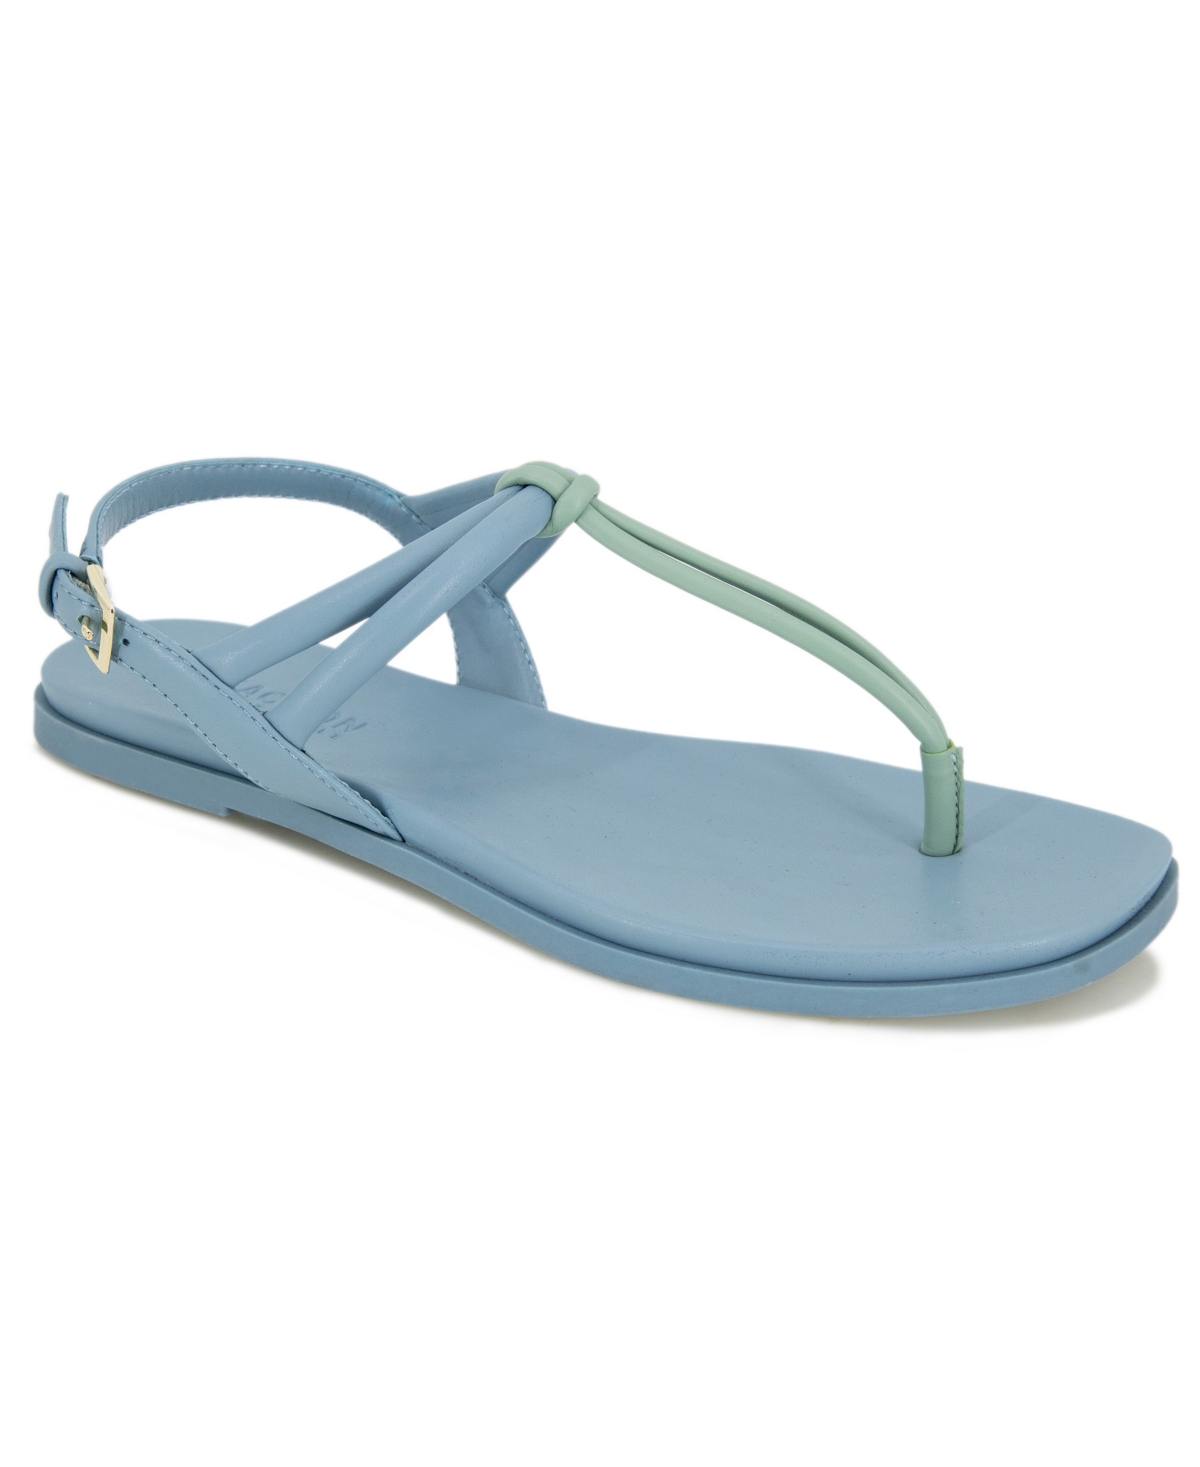 Women's Warren Slip-on Flat Sandals - Blue Multi